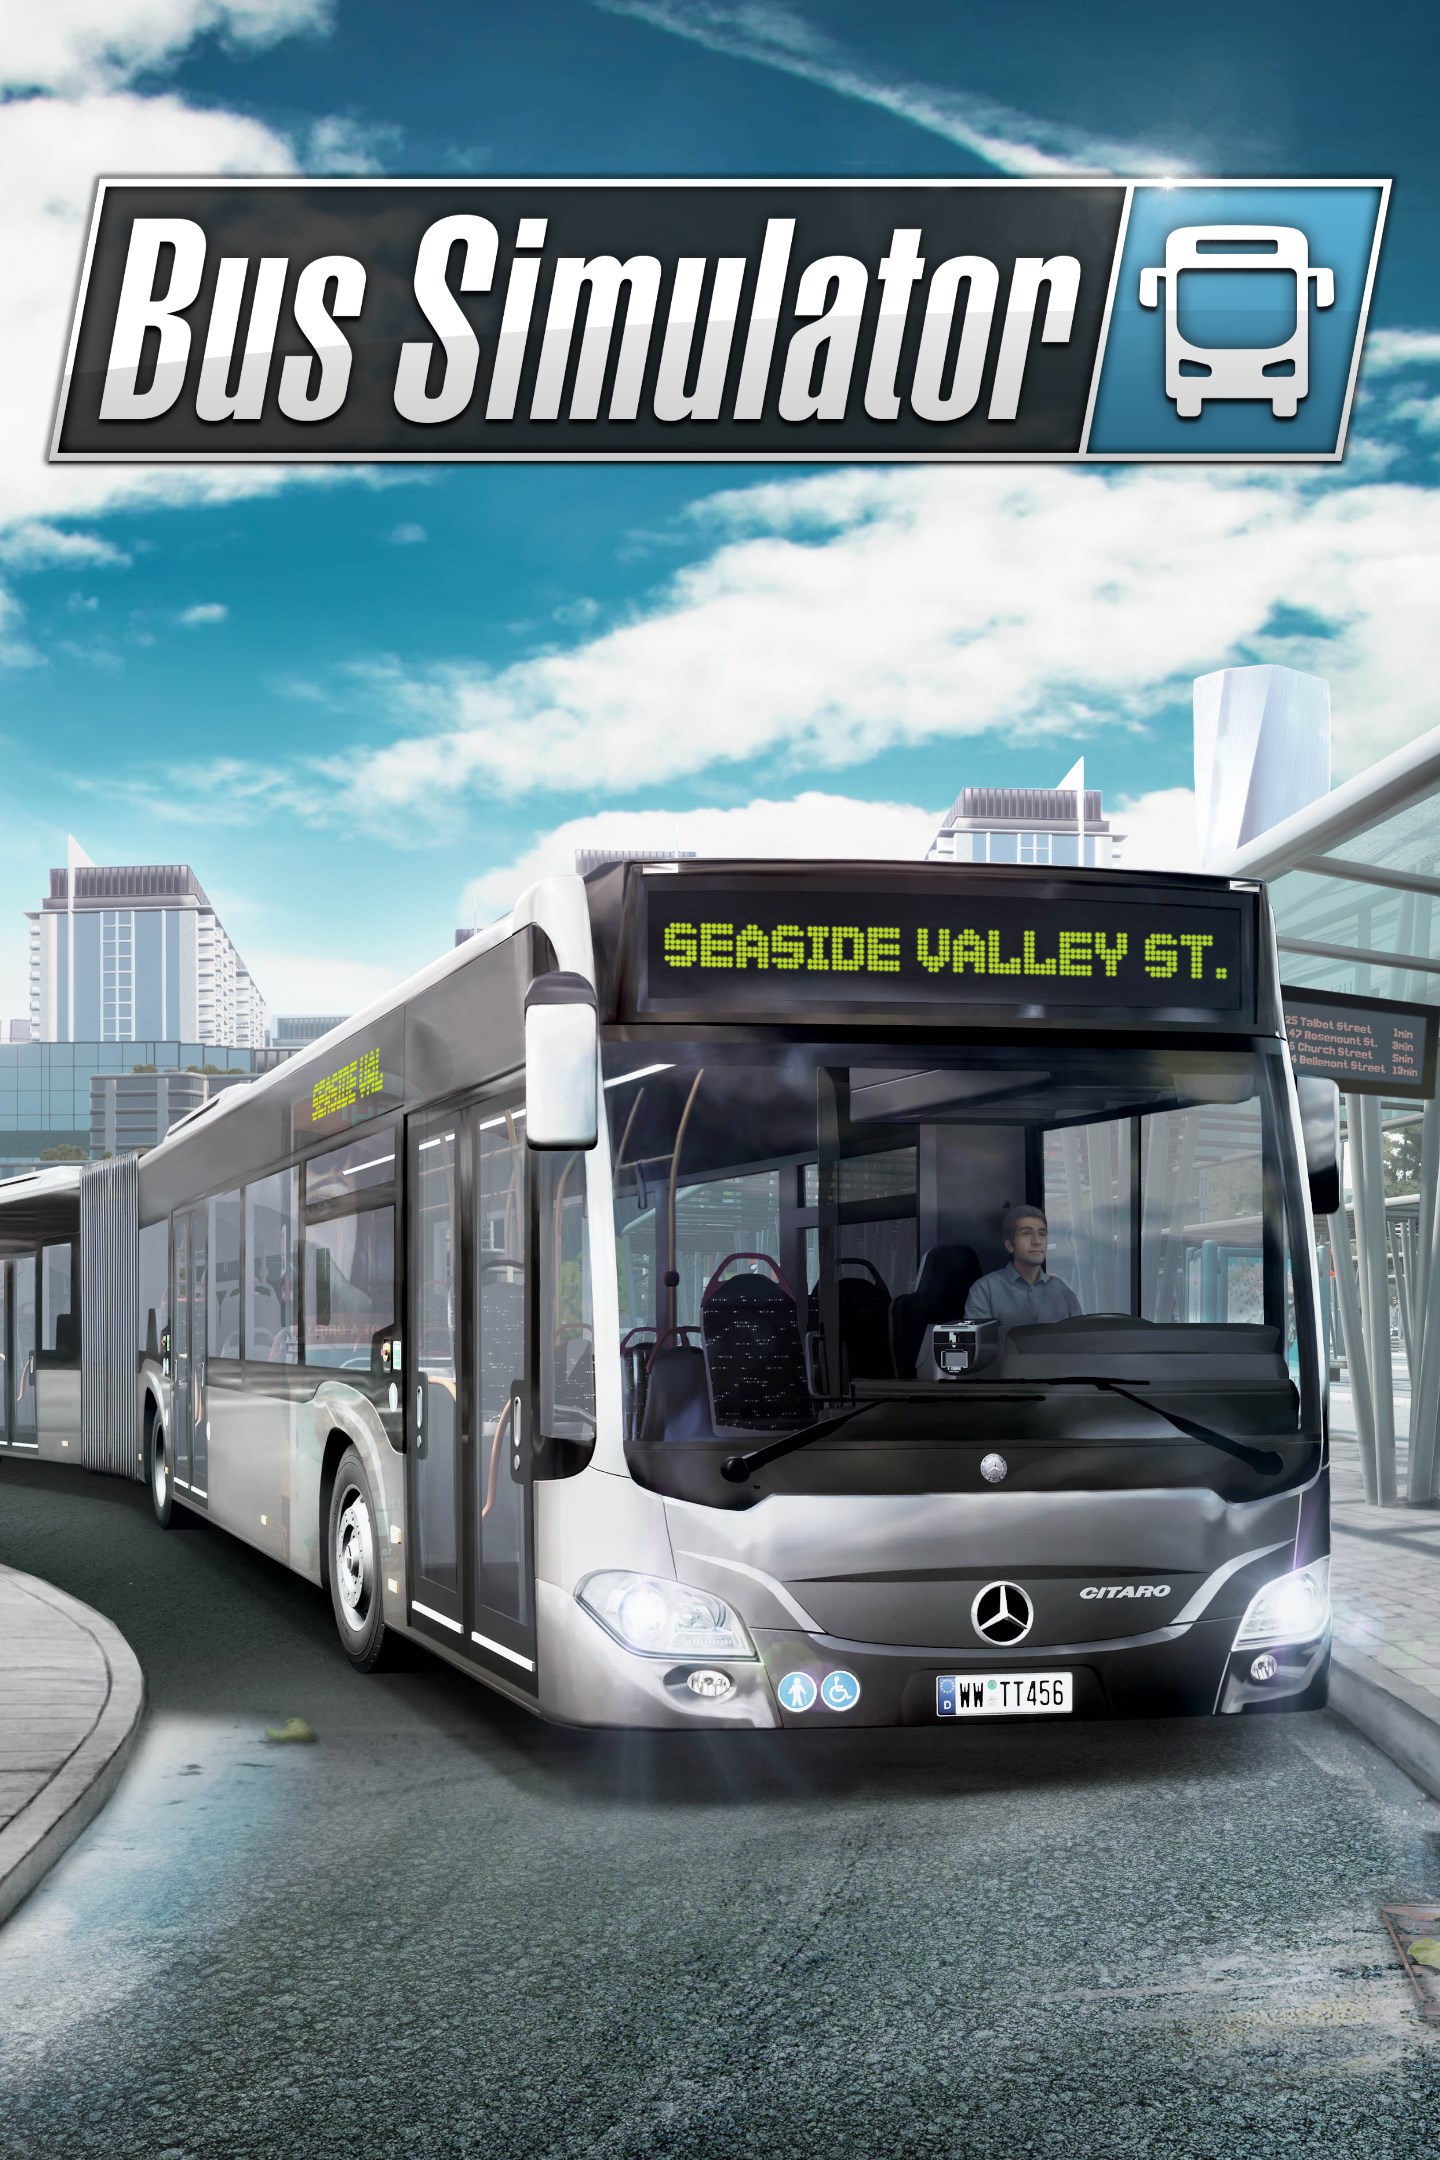 Bus simulator 16 download mac installer